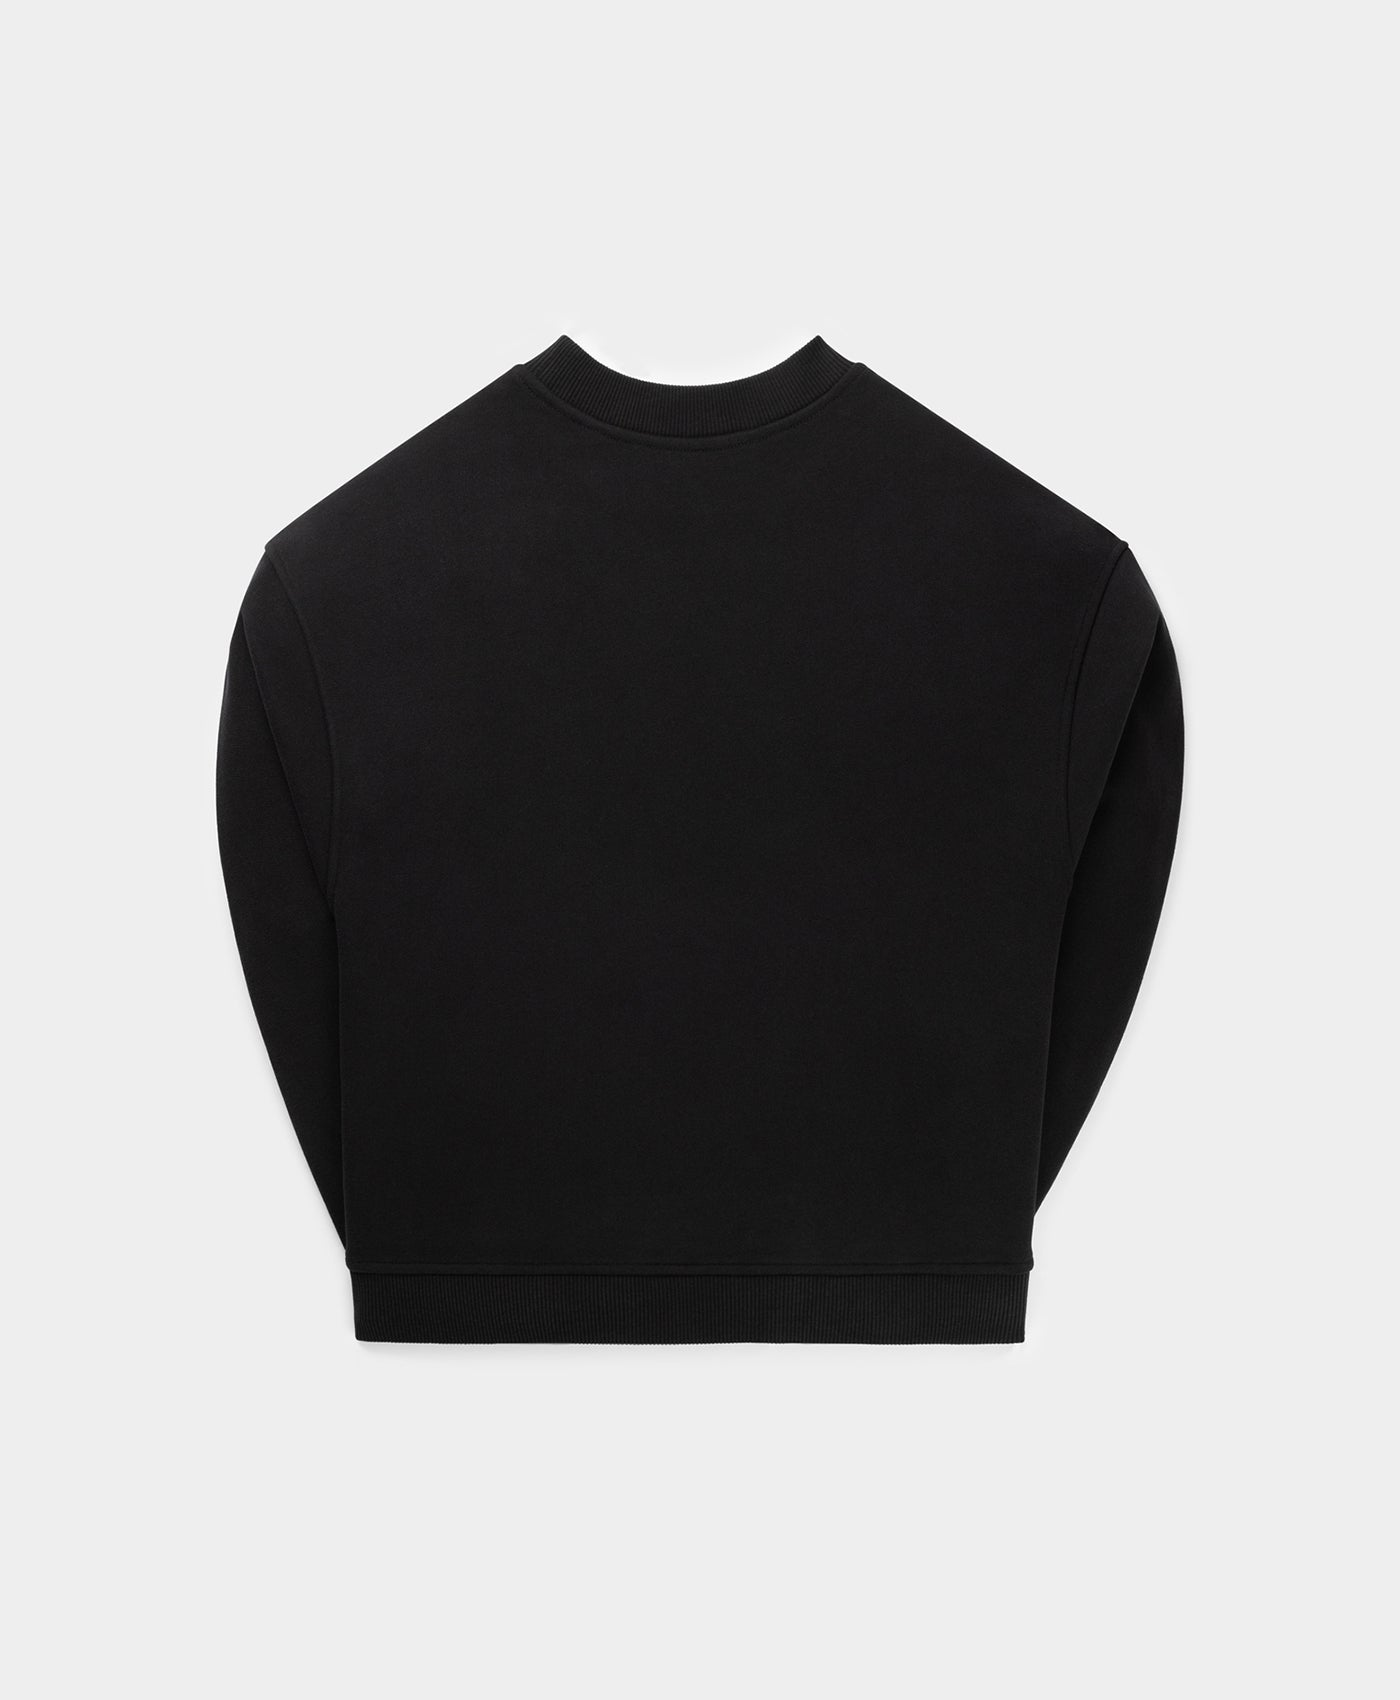 DP - Black Hoku Sweater - Packshot - Rear